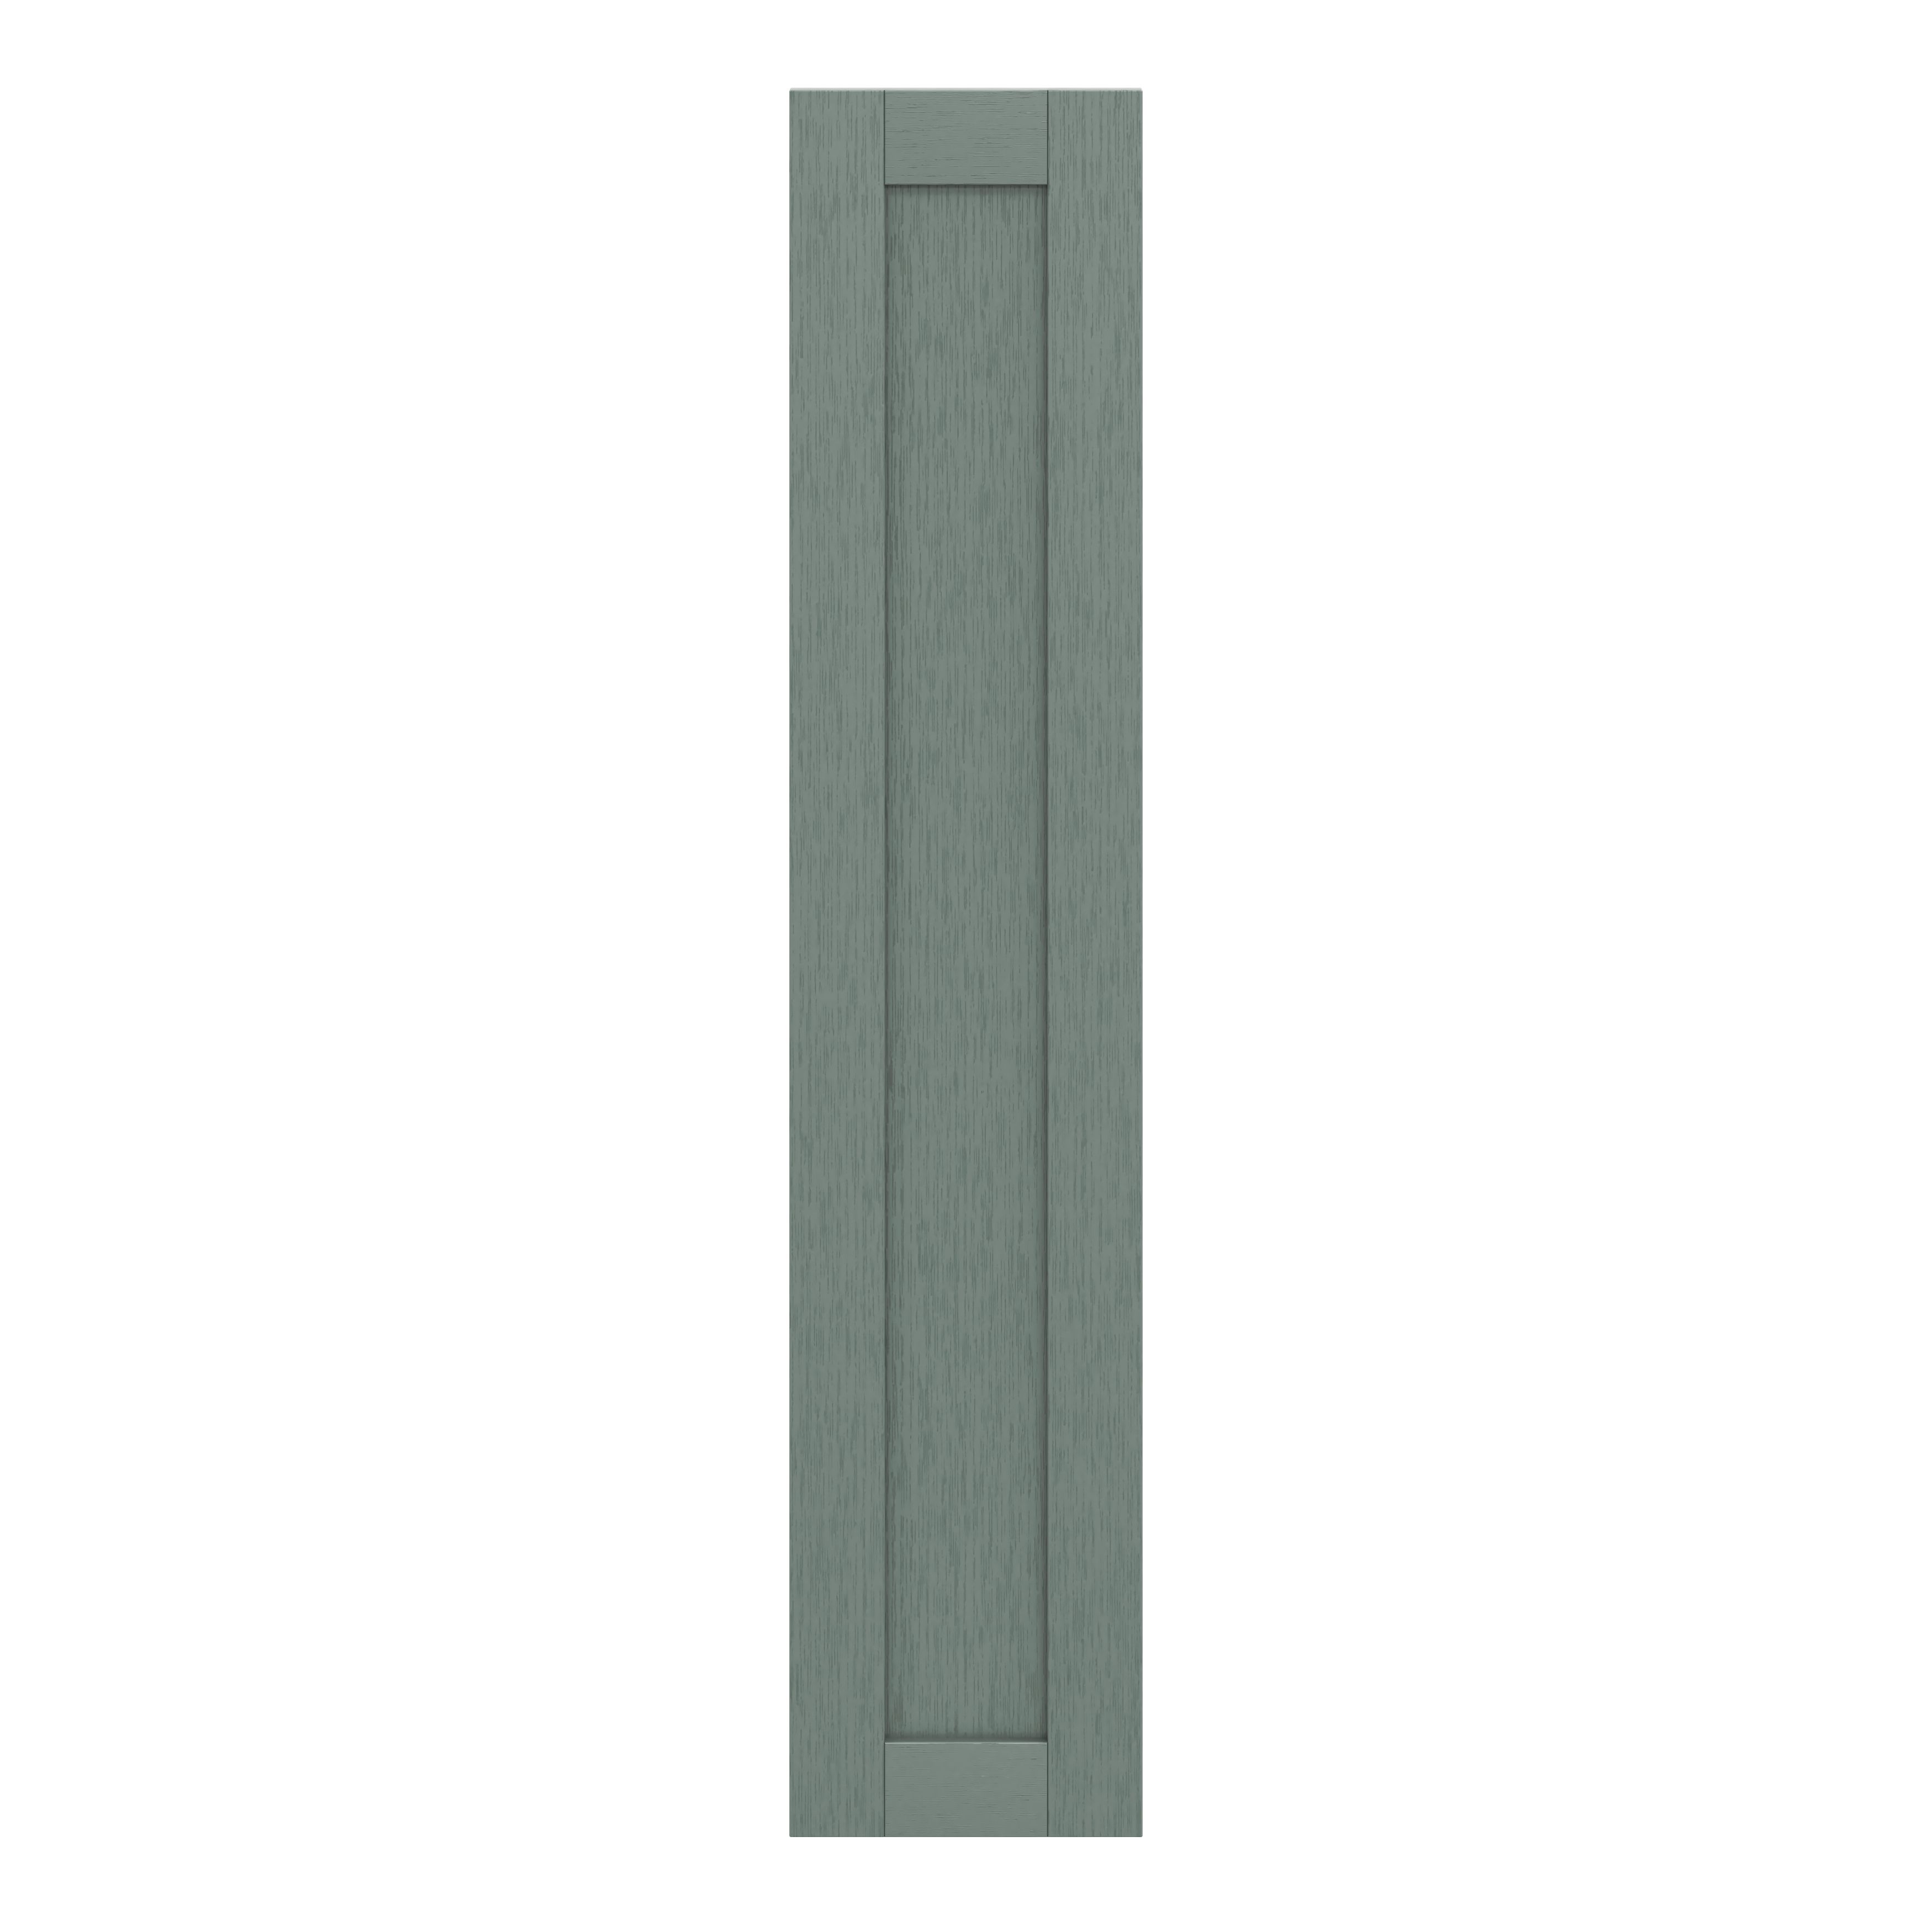 GoodHome Alpinia Matt Green Painted Wood Effect Shaker Tall larder Cabinet door (W)300mm (H)1467mm (T)18mm